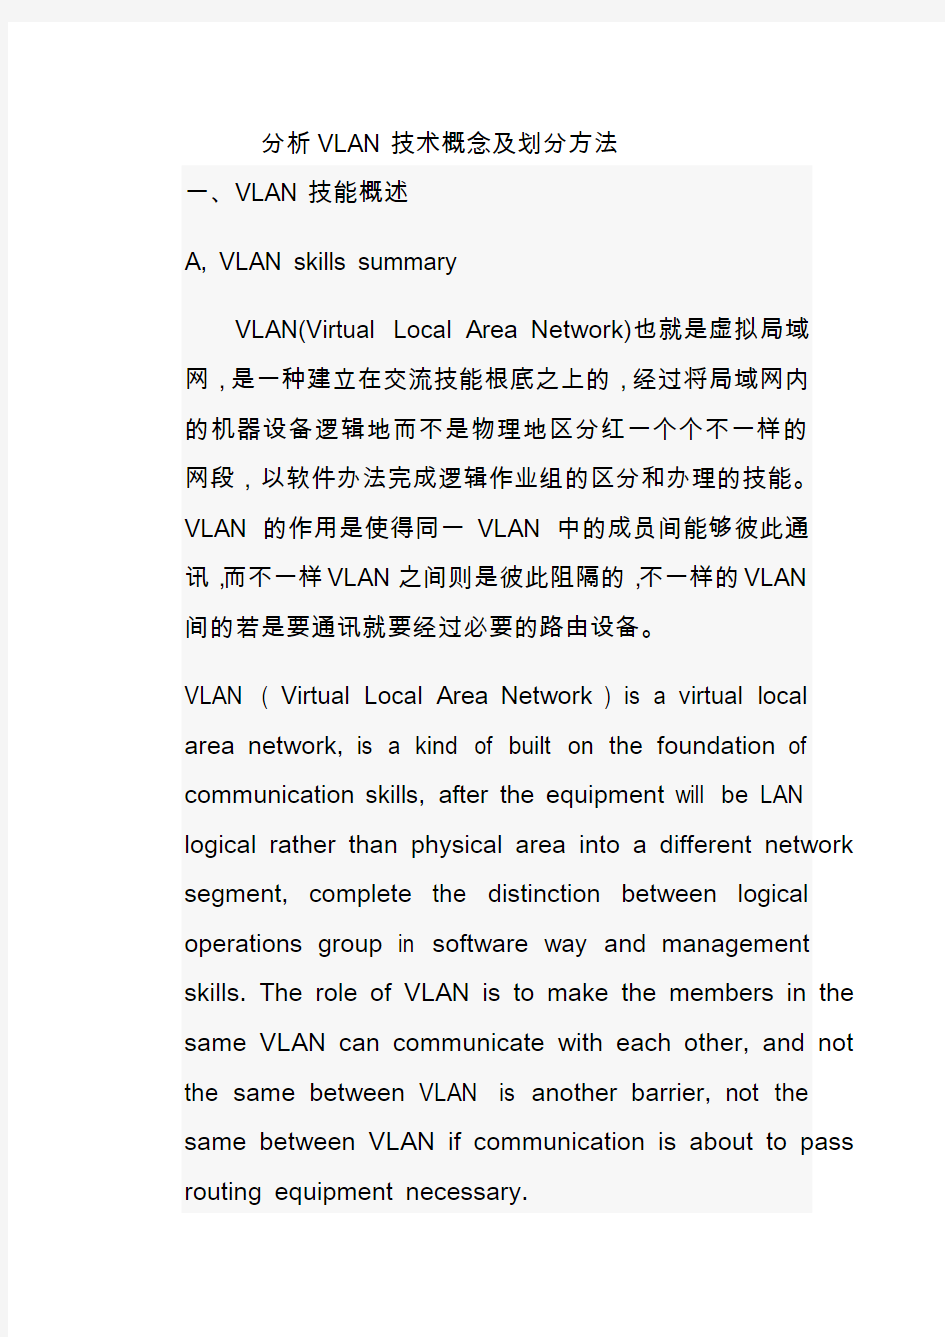 分析VLAN技术概念和划分方法